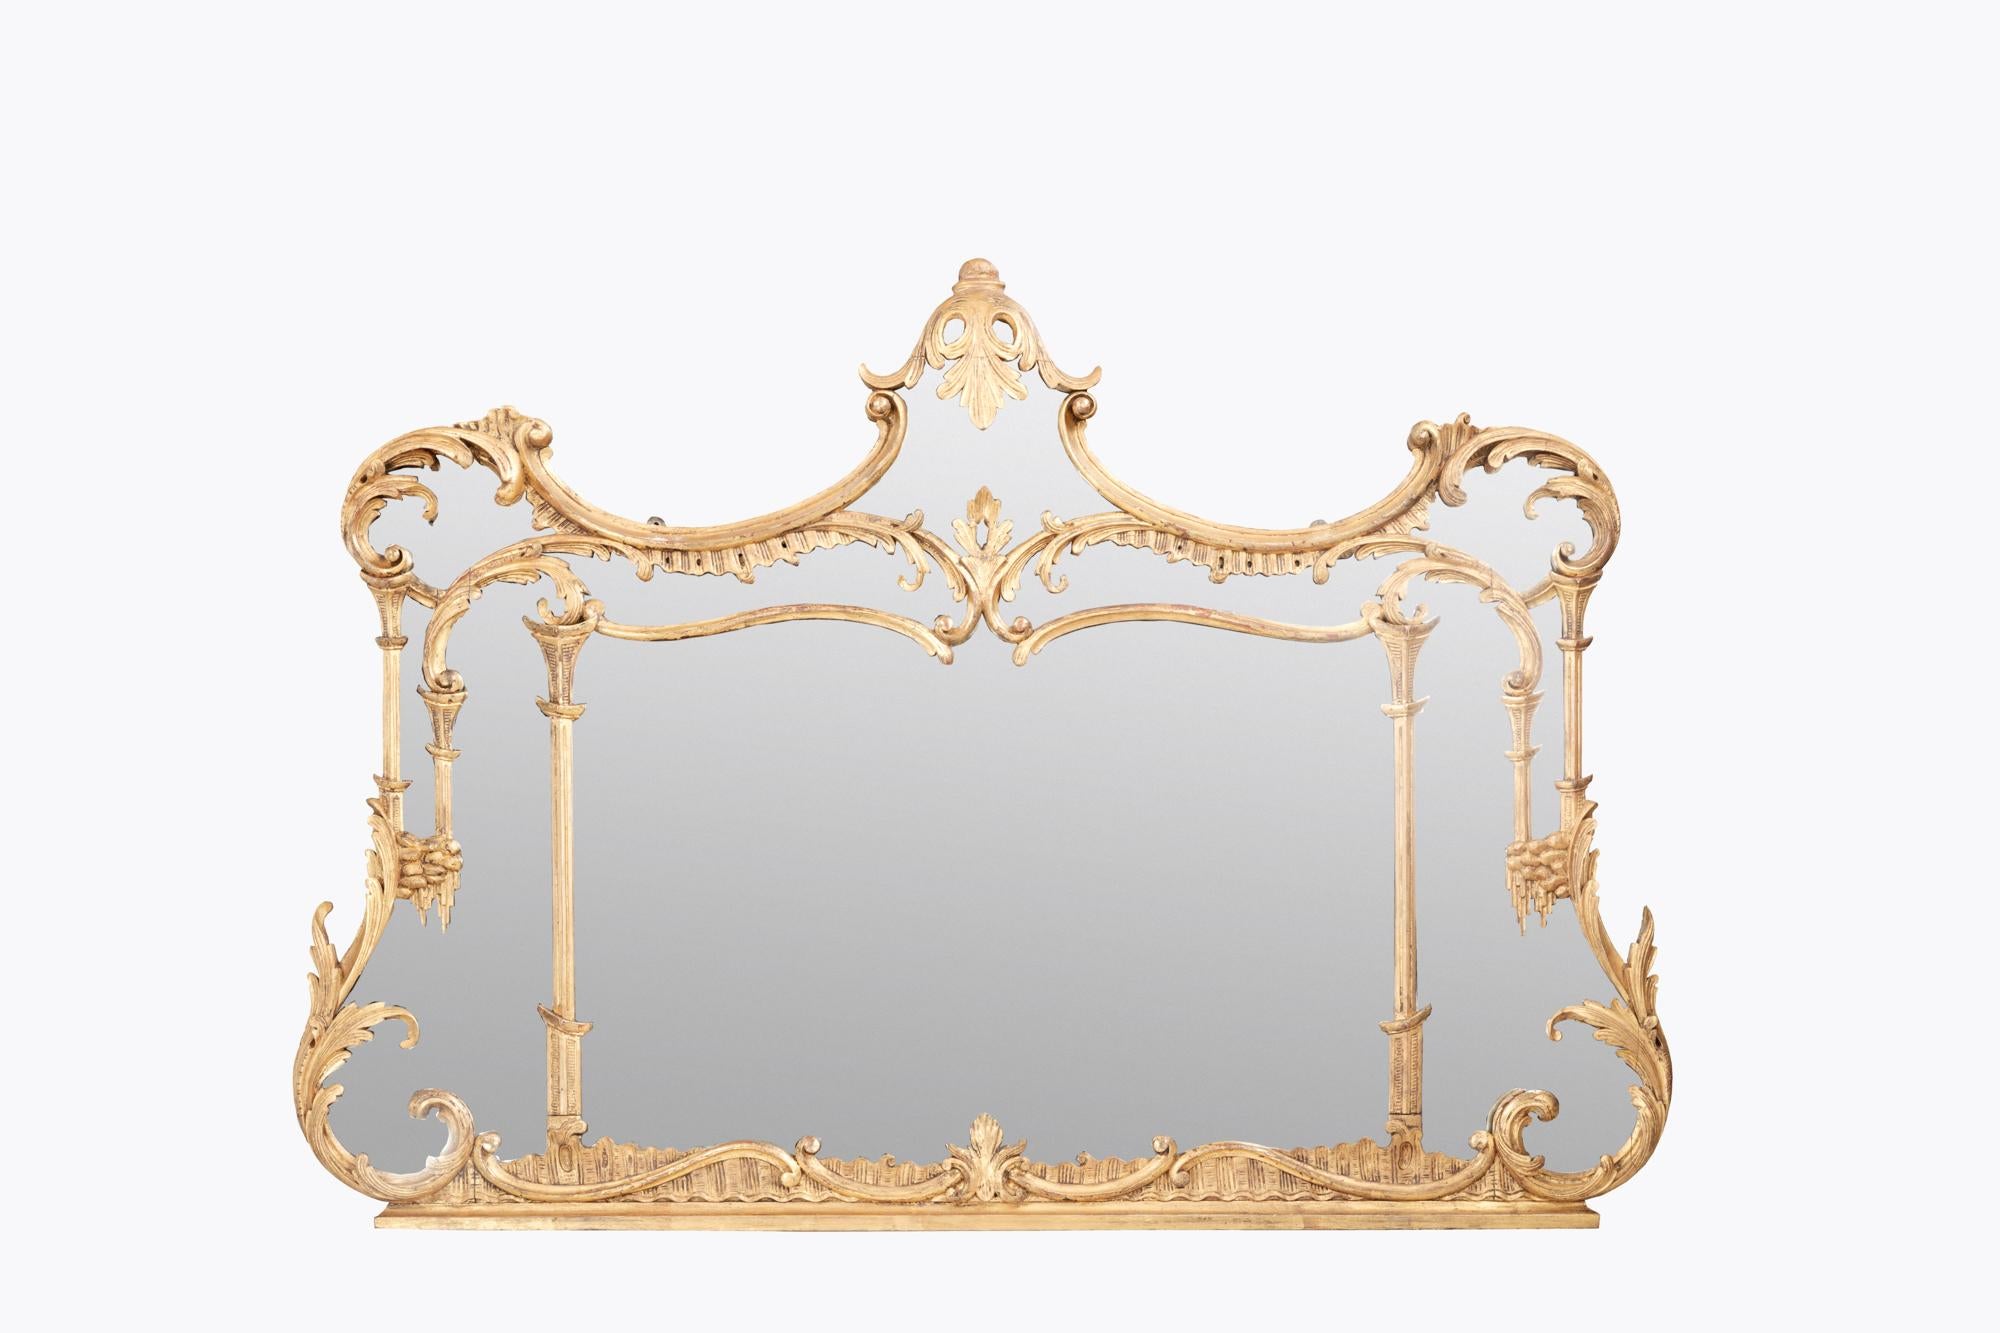 Miroir à trumeau du 19e siècle avec des détails de feuilles d'acanthe et de volutes. Le cadre doré est orné de subtils éléments de style Chippendale chinois, notamment des piliers de pagode. Des détails en forme de cascade stylisée ornent les